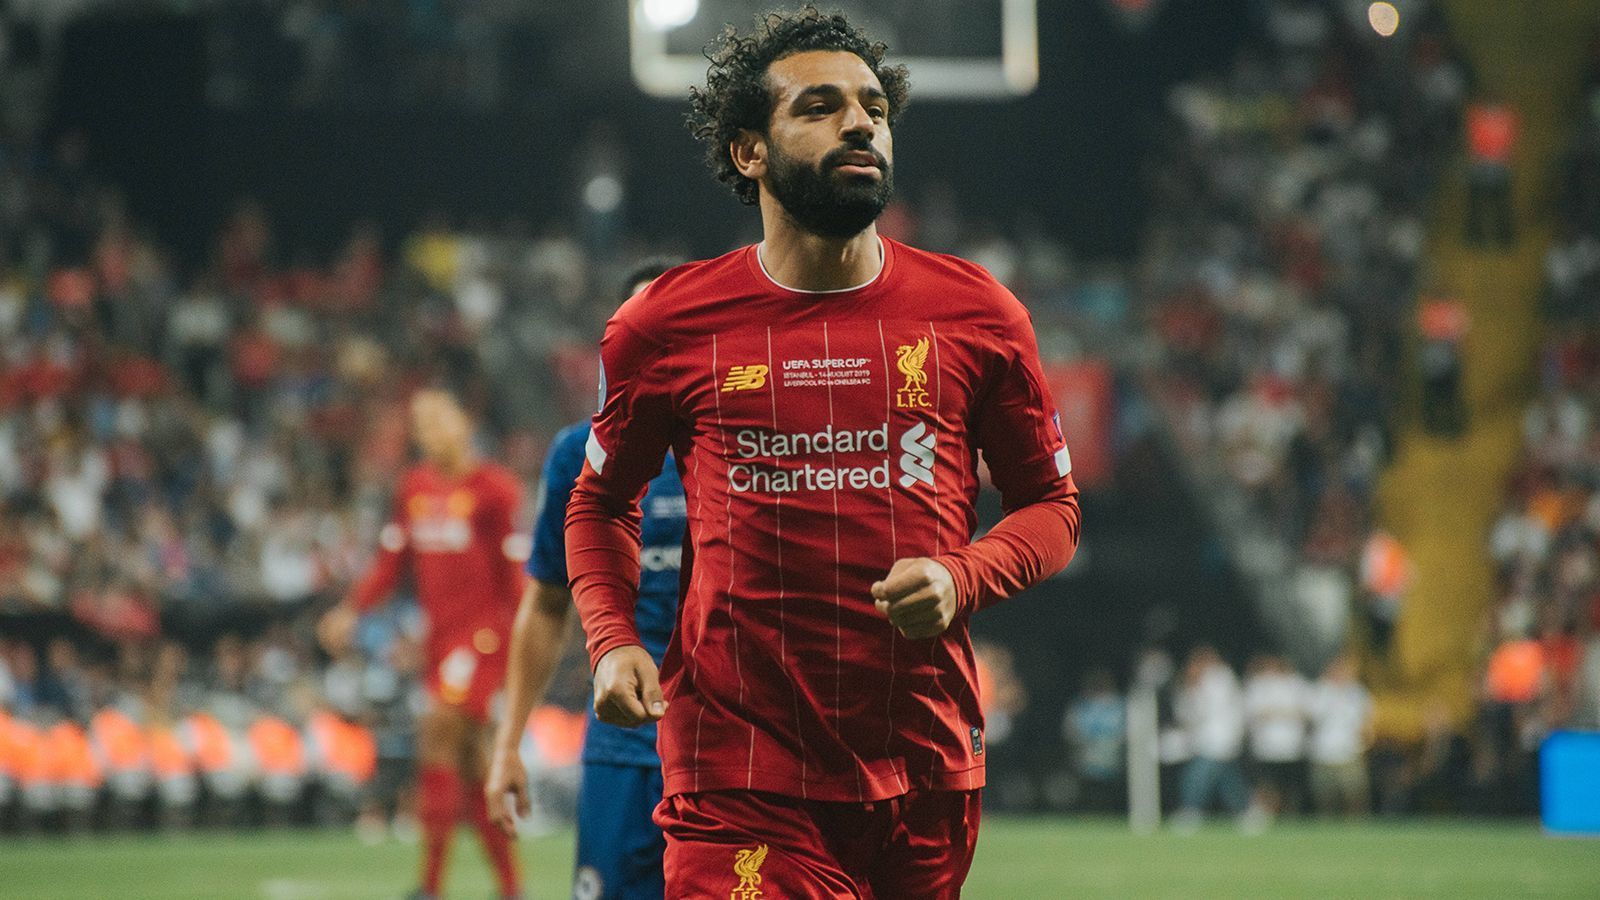 
                <strong>Mohammad Salah (Adidas)</strong><br>
                Der ägyptische Nationalspieler und Superstar des FC Liverpool steht beim deutschen Sportartikel-Hersteller "Adidas" unter Vertrag. 2,8 Millionen Euro springen jährlich aus dem Ausrüster-Vertrag für den 30-Jährigen hervor.
              